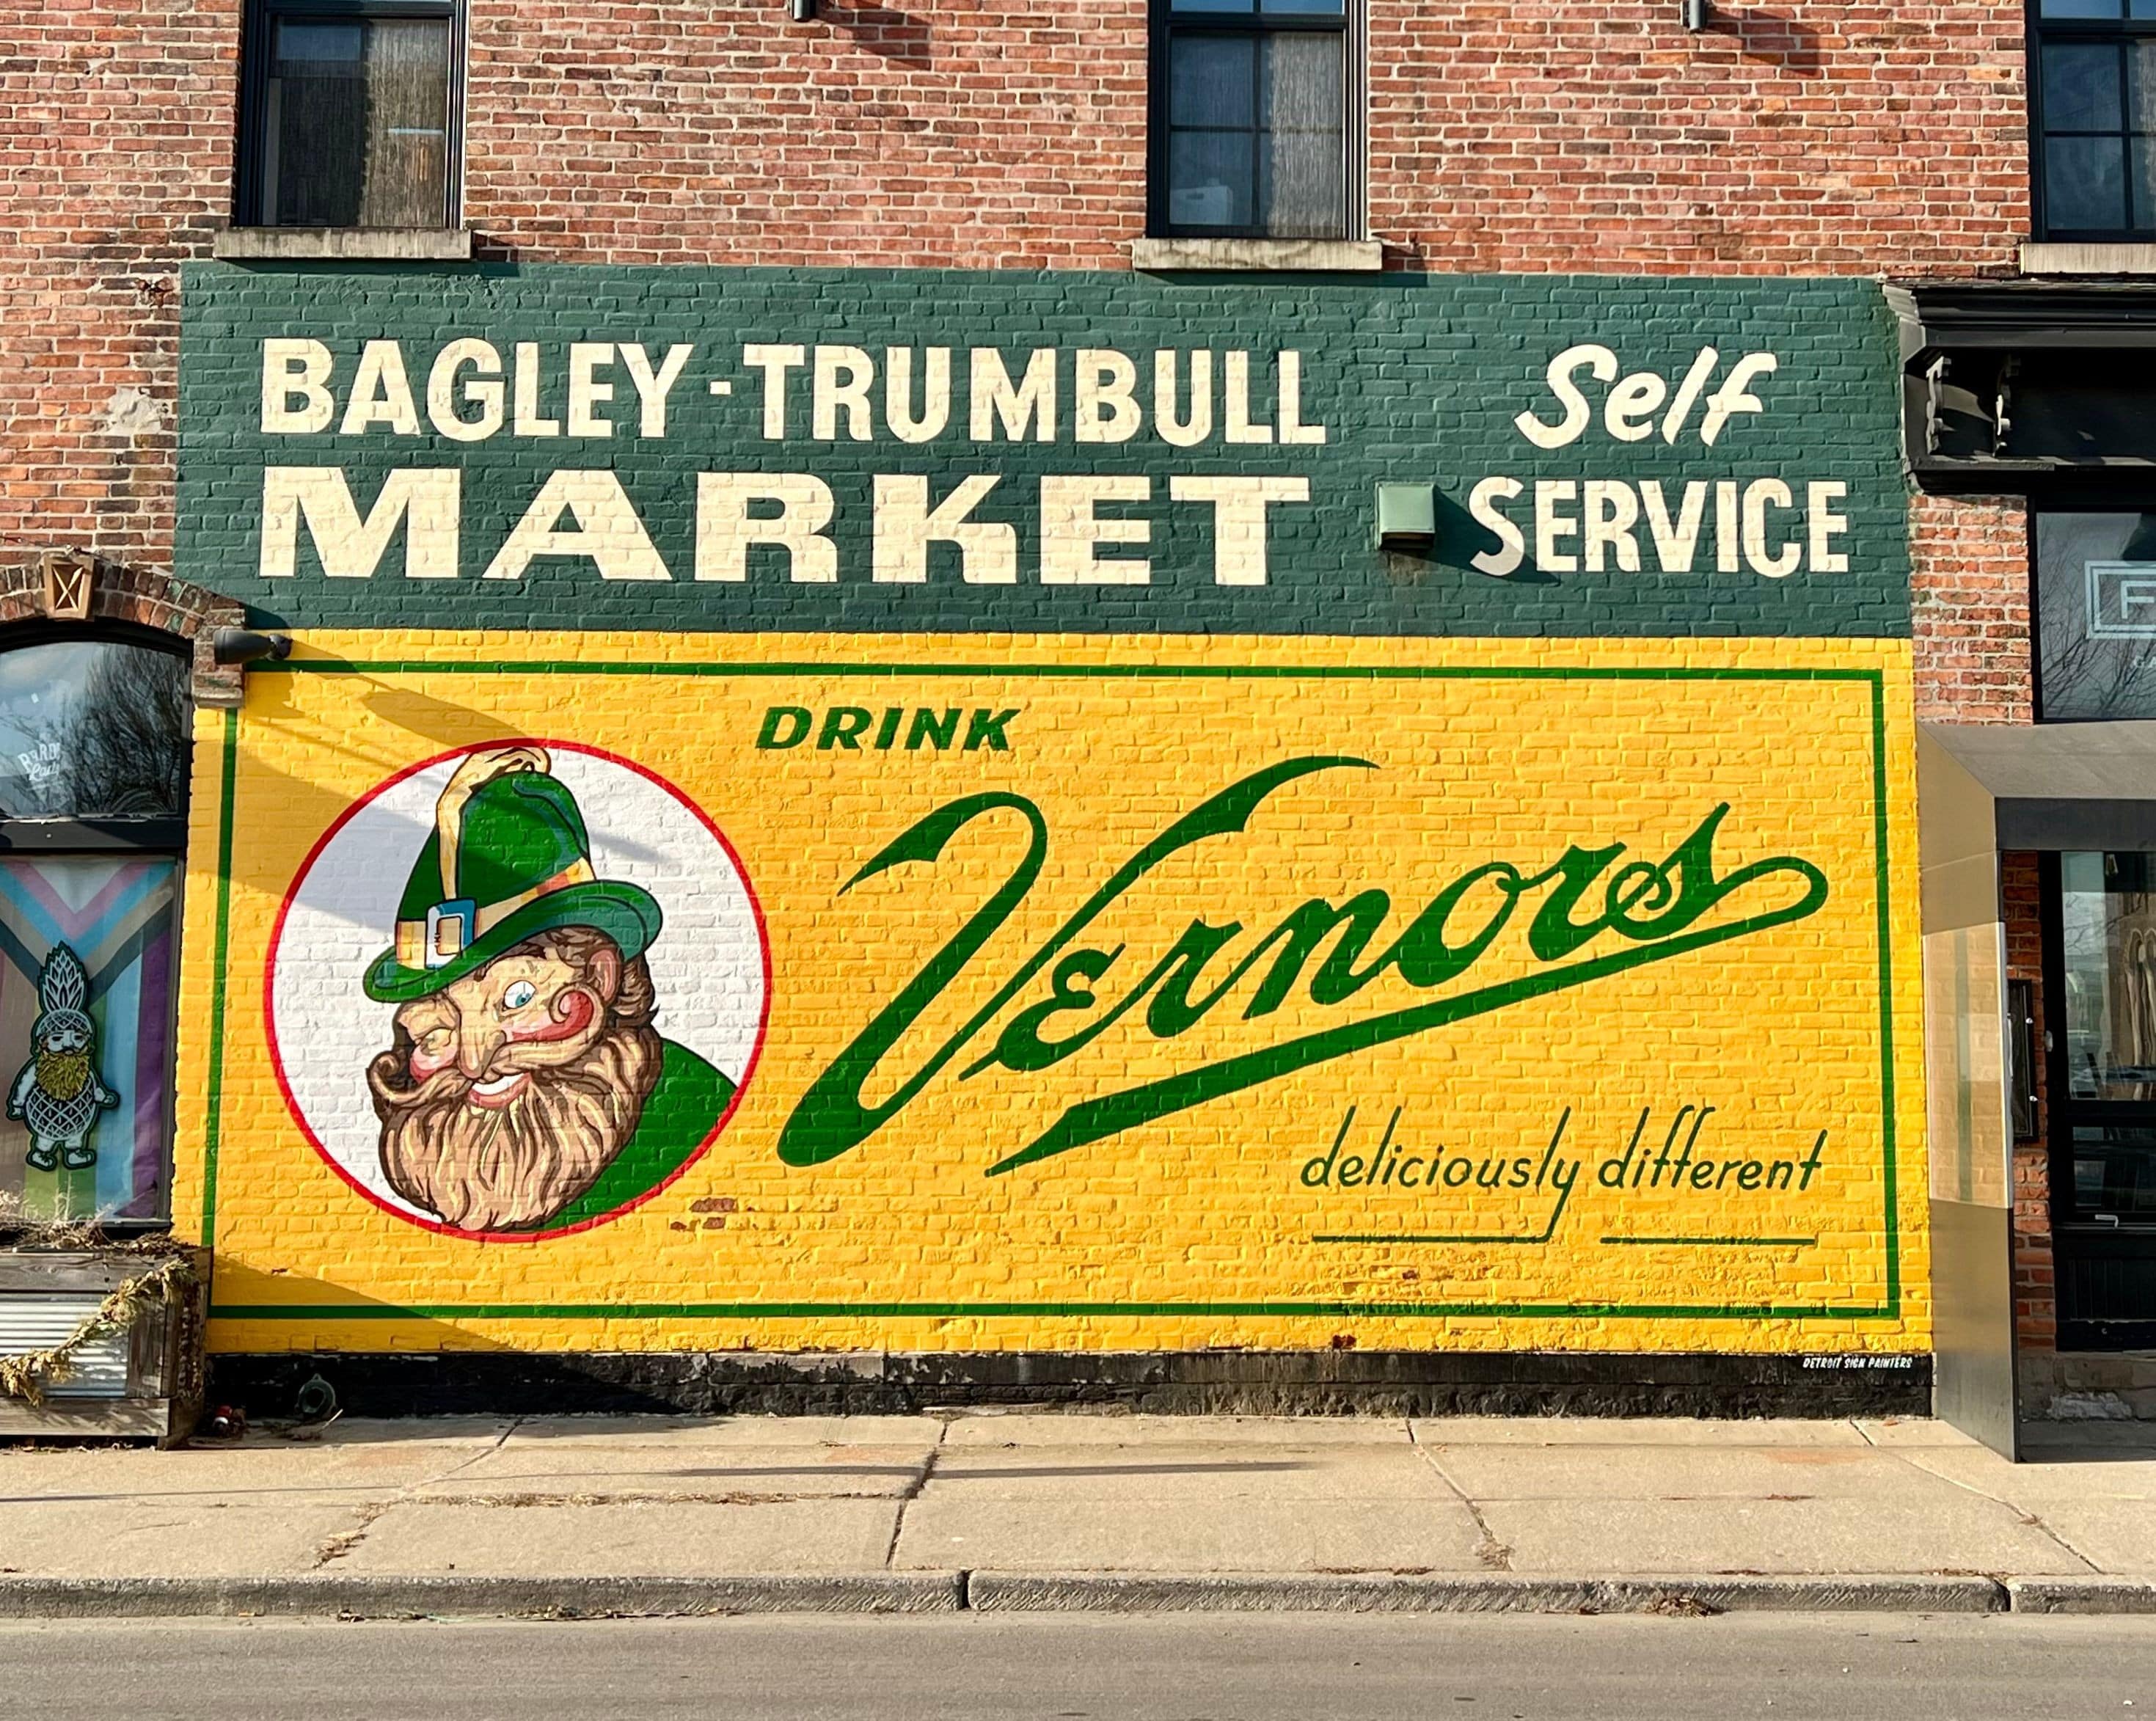 Sign depicts a nostalgic vintage billboard advertising Vernors Ginger Ale -- a longtime favorite Detroit soft drink.